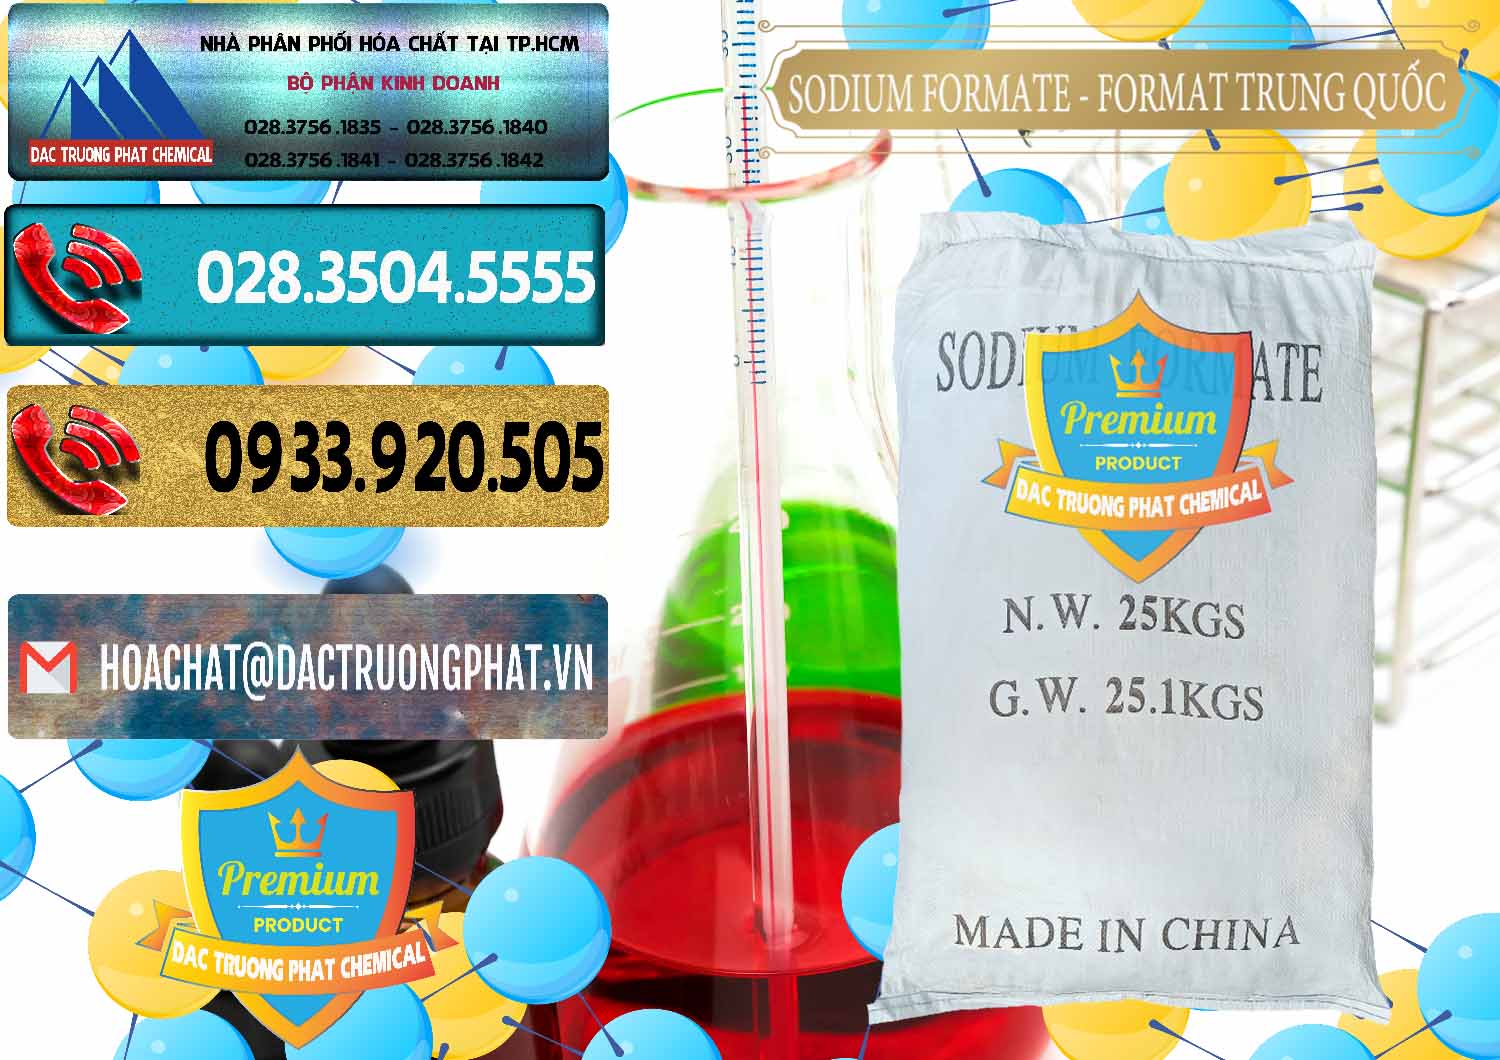 Cty chuyên bán và phân phối Sodium Formate - Natri Format Trung Quốc China - 0142 - Cty bán - cung cấp hóa chất tại TP.HCM - hoachatdetnhuom.com